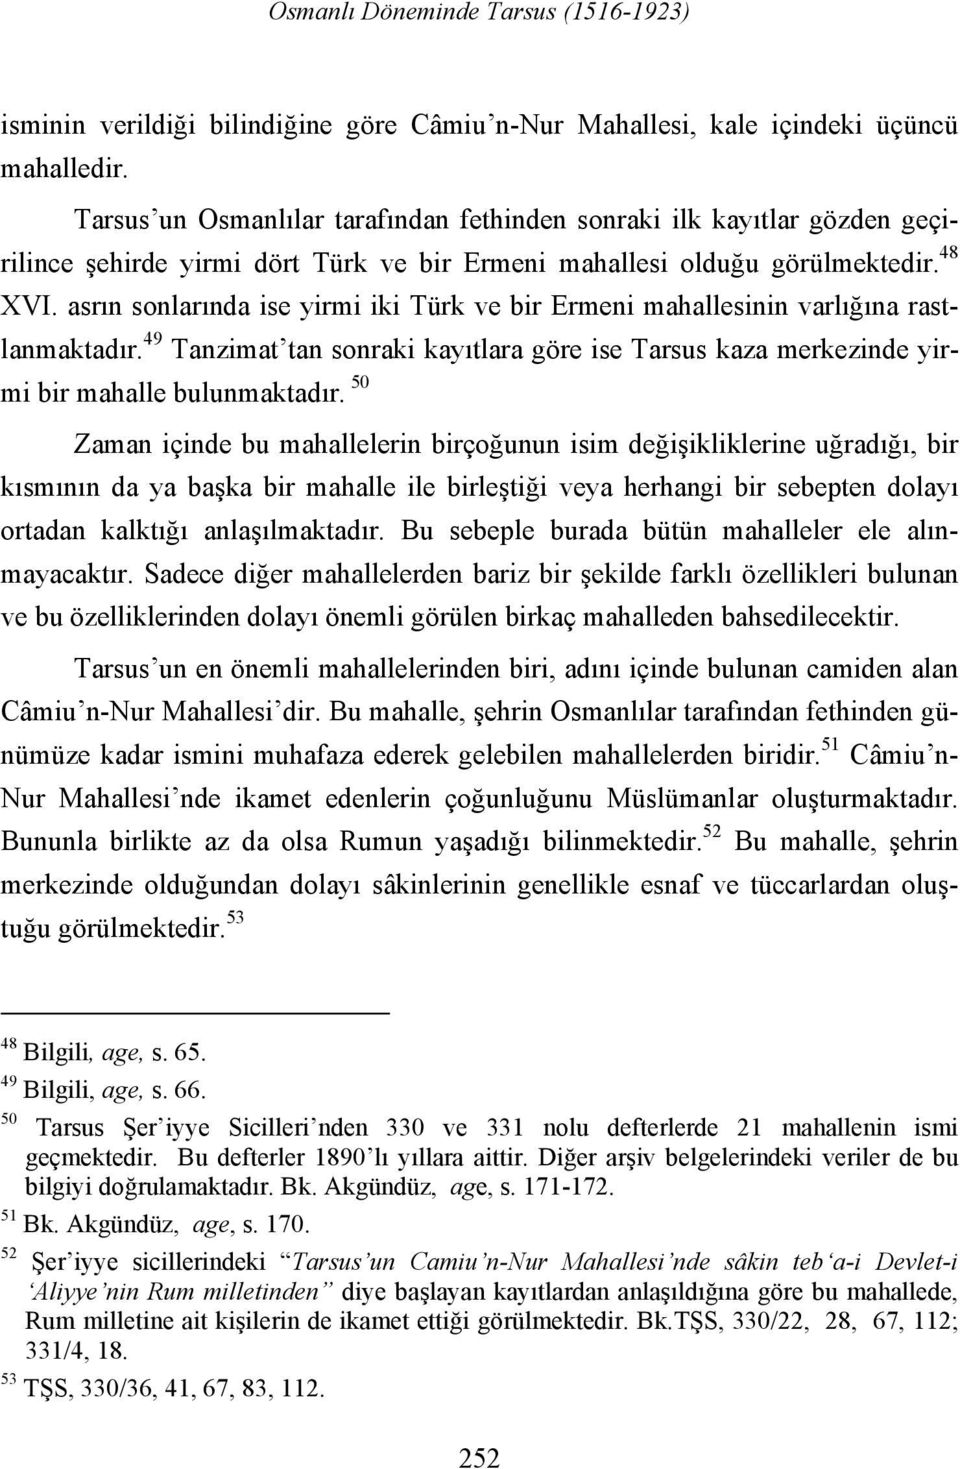 asrın sonlarında ise yirmi iki Türk ve bir Ermeni mahallesinin varlığına rastlanmaktadır. 49 Tanzimat tan sonraki kayıtlara göre ise Tarsus kaza merkezinde yirmi bir mahalle bulunmaktadır.